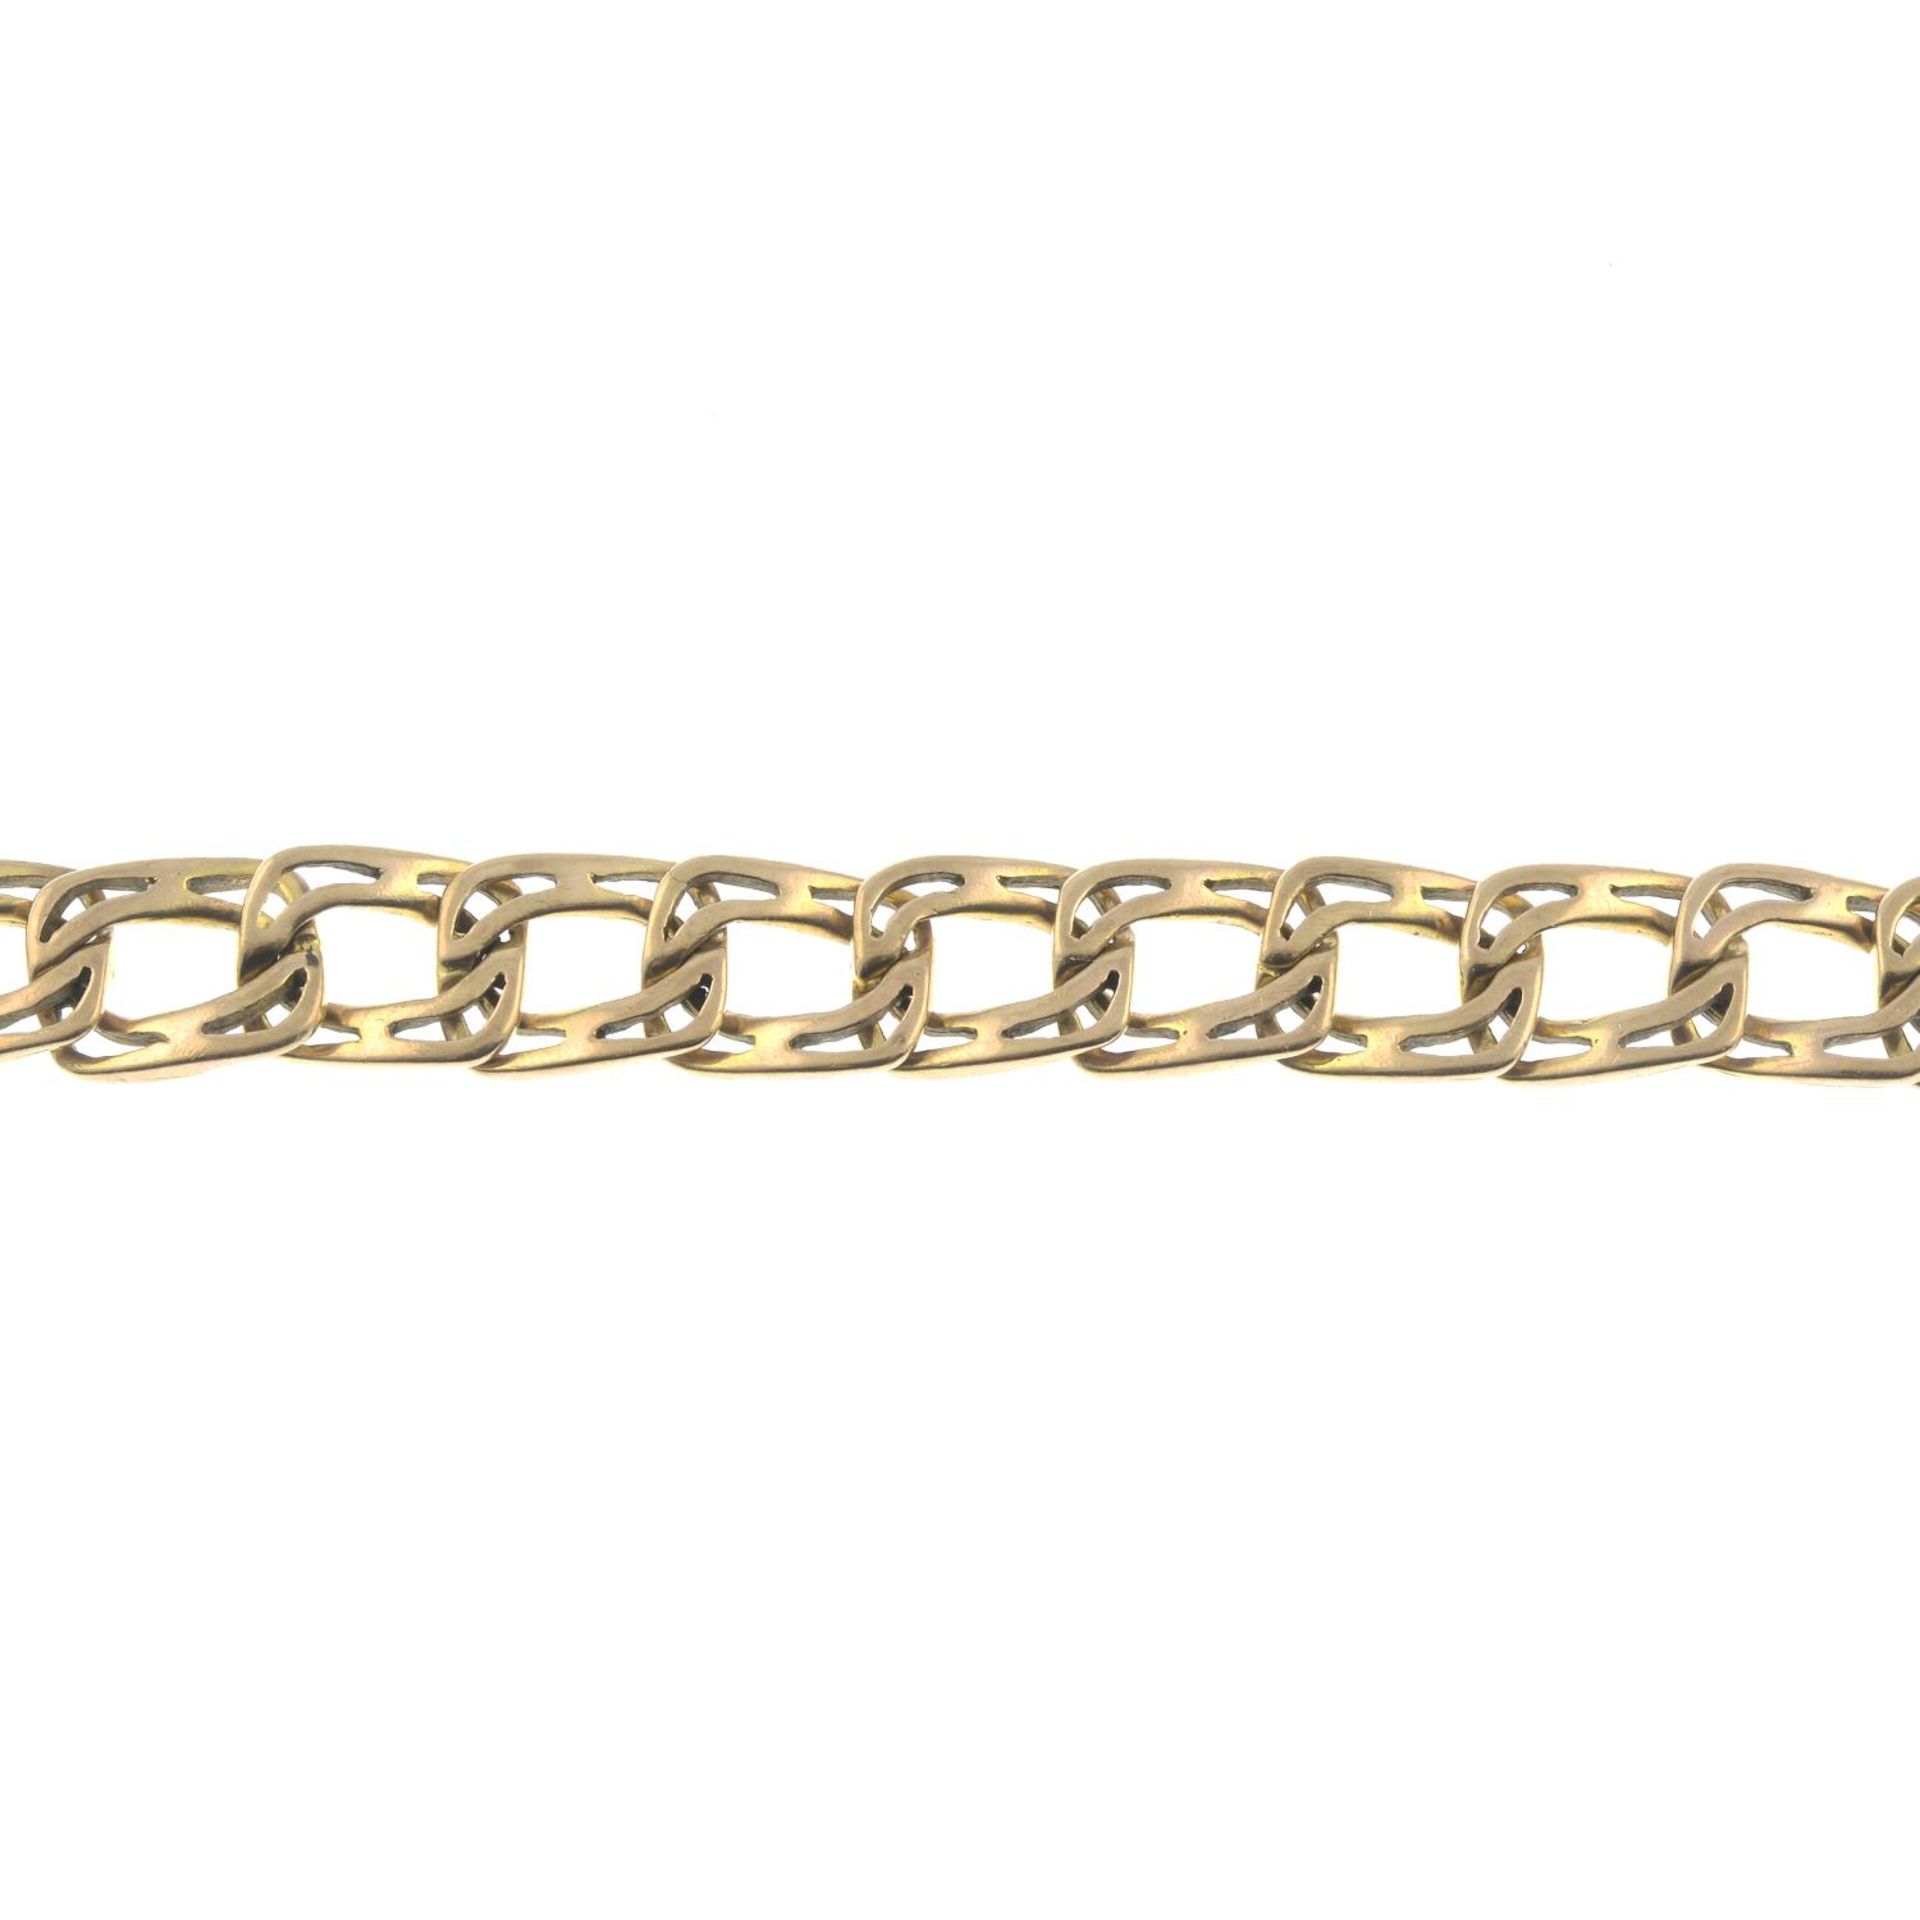 A 9ct gold fancy curb-link bracelet.